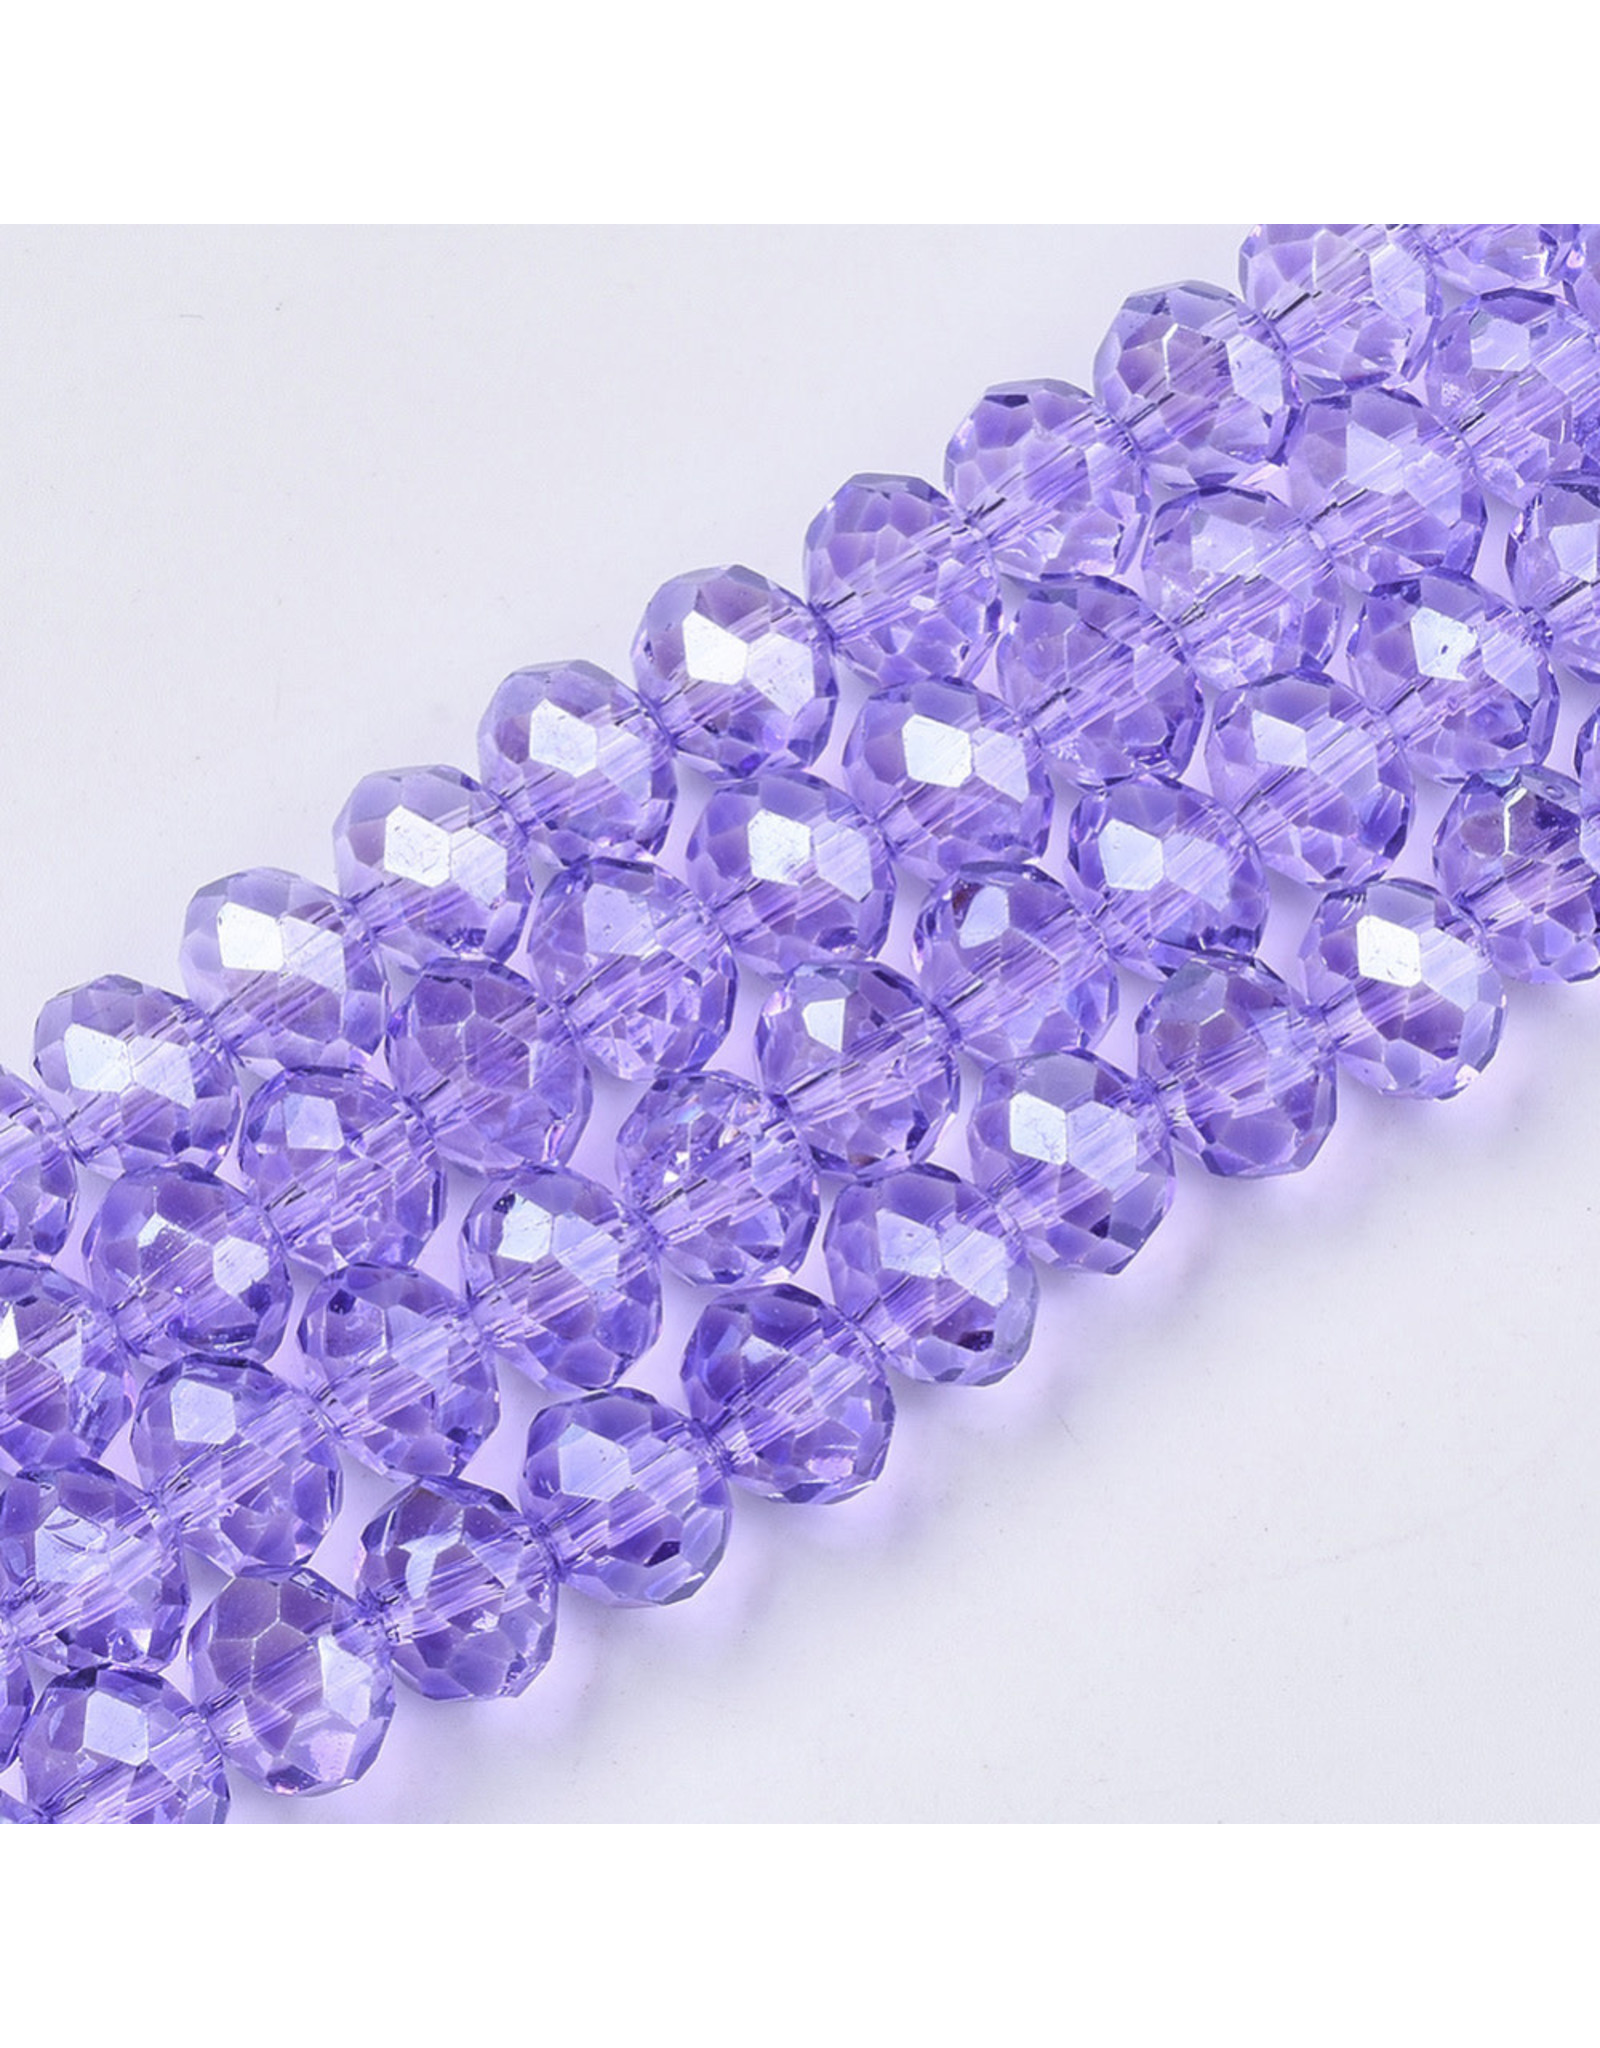 6x4mm Rondelle Transparent Lilac Purple Lustre x90